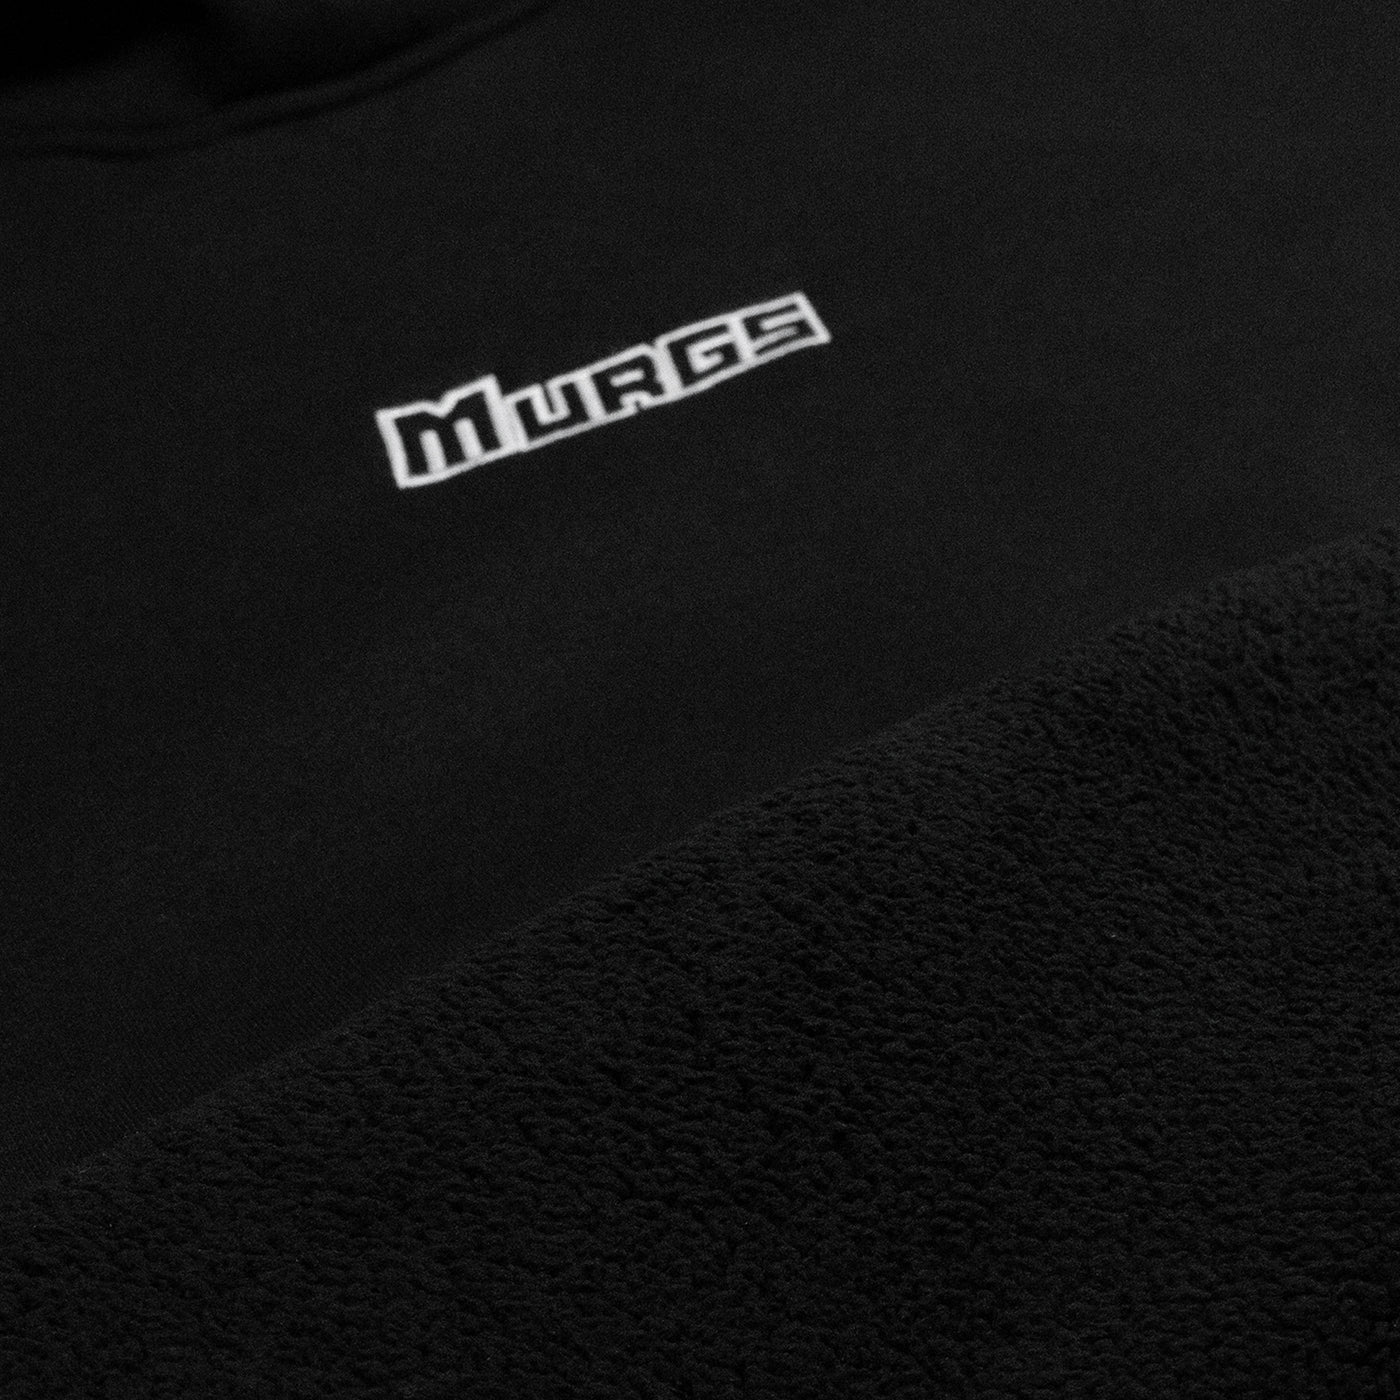 Oversized black unisex Murgs training hoodie